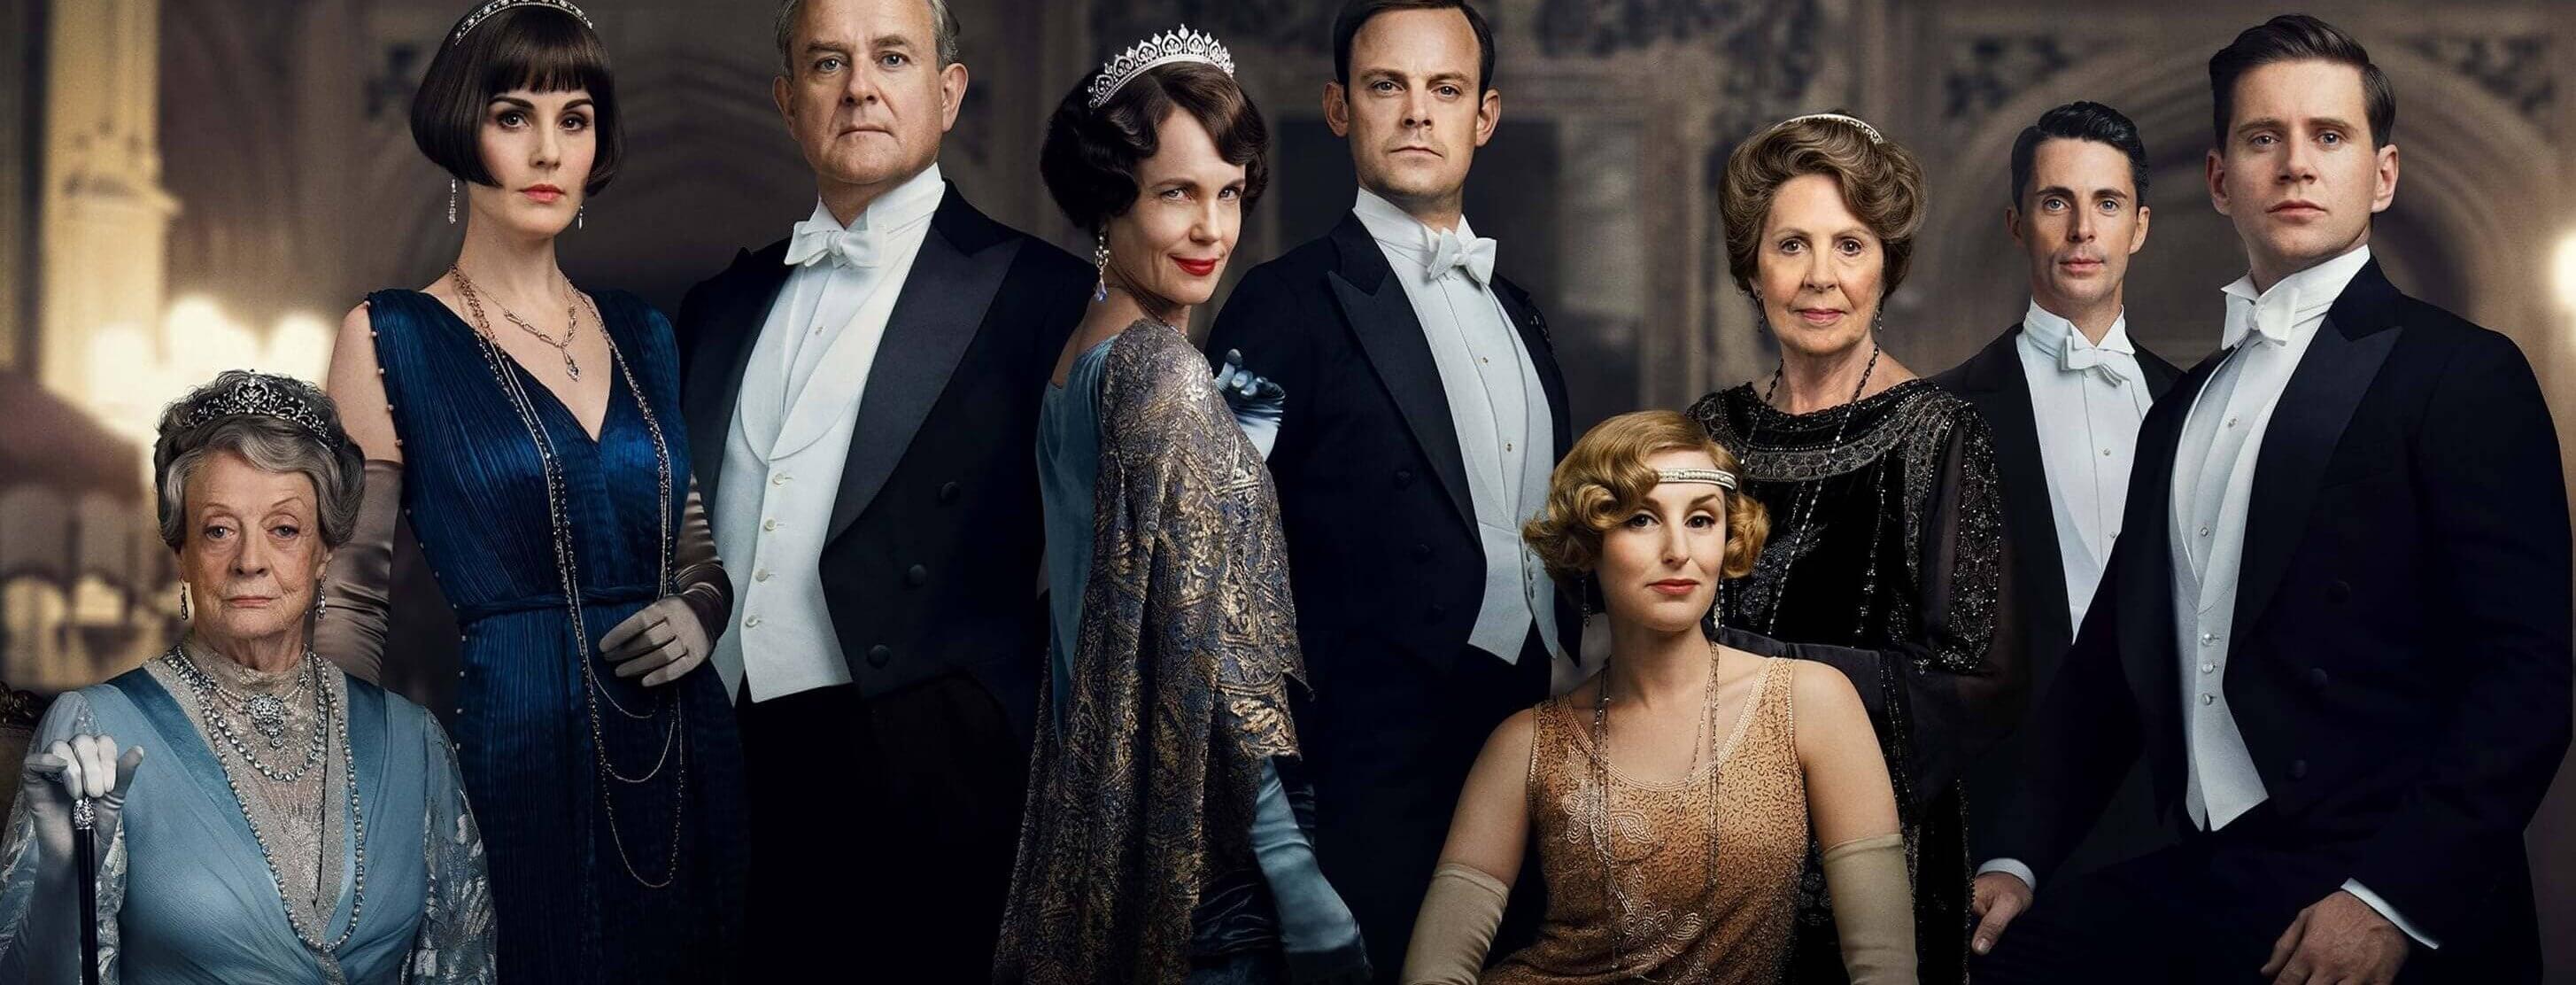 Downton Abbey 4K 2019 big poster